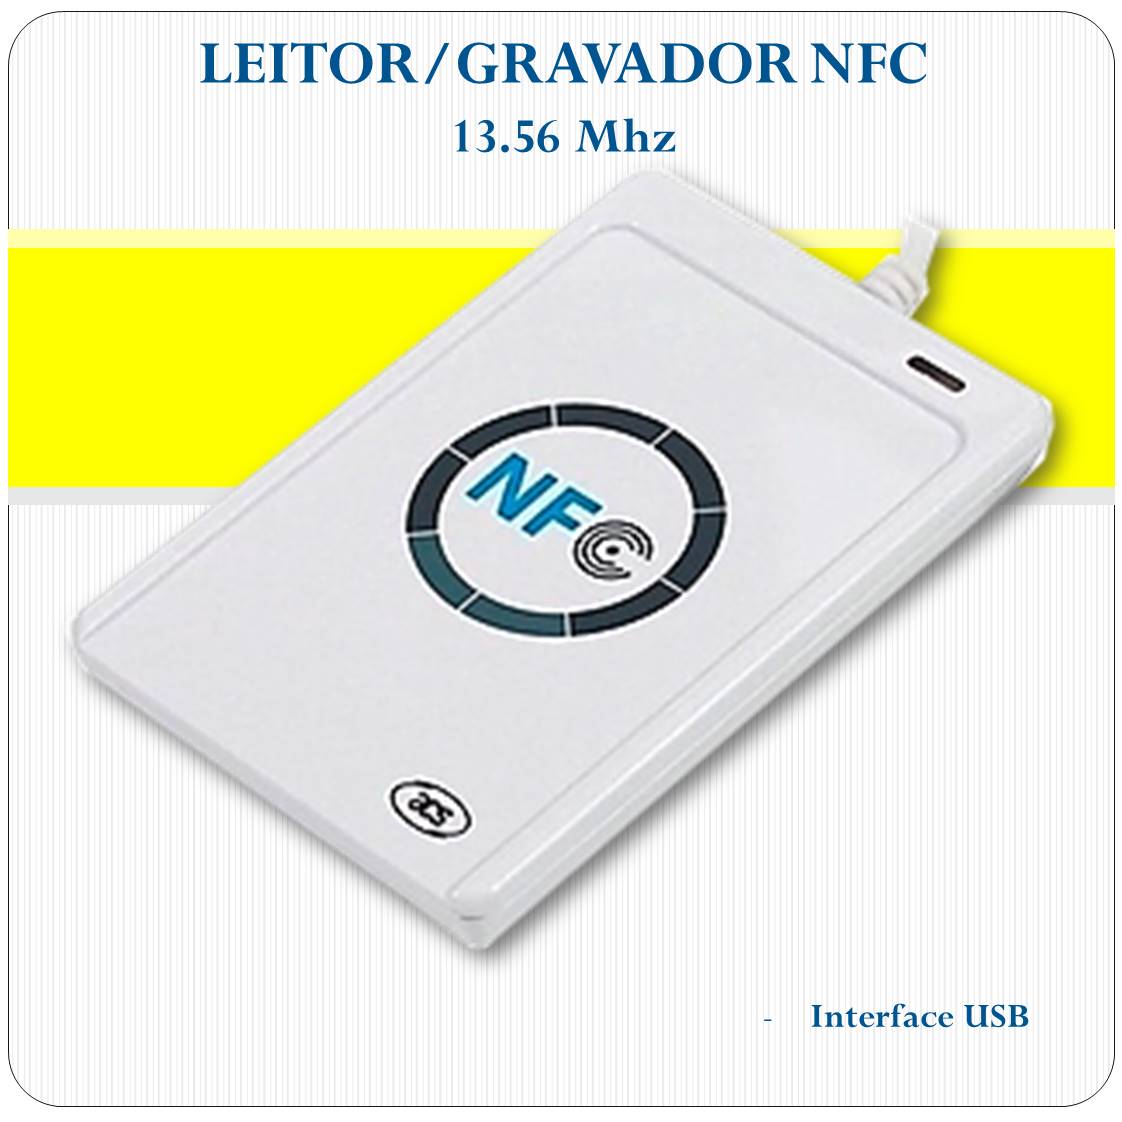 Leitor e Gravador Rfid NFC Acr122u 13.56mhz